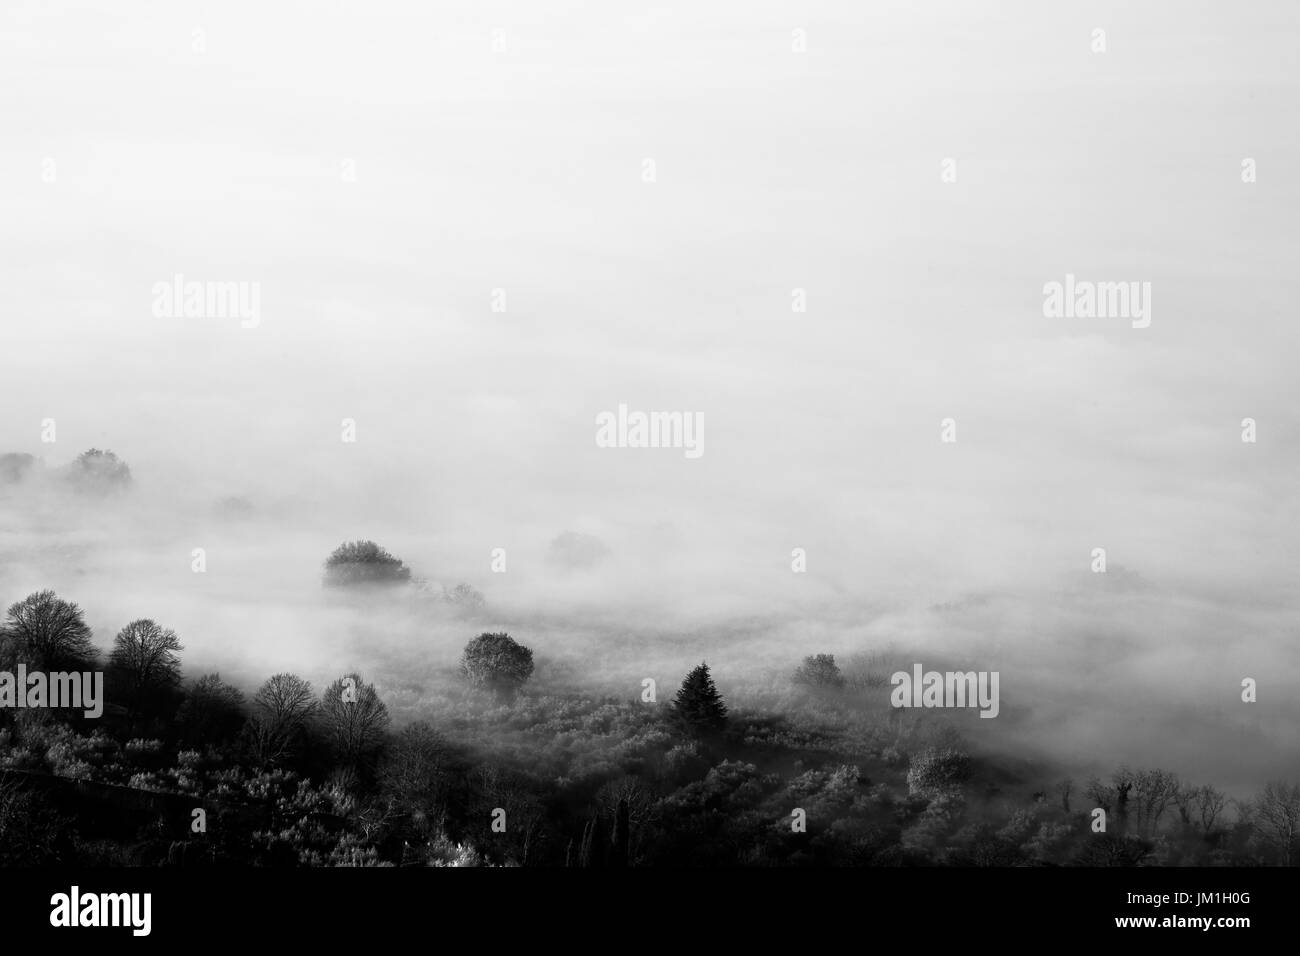 Le brouillard couvrant quelques arbres et presque toute l'image Banque D'Images